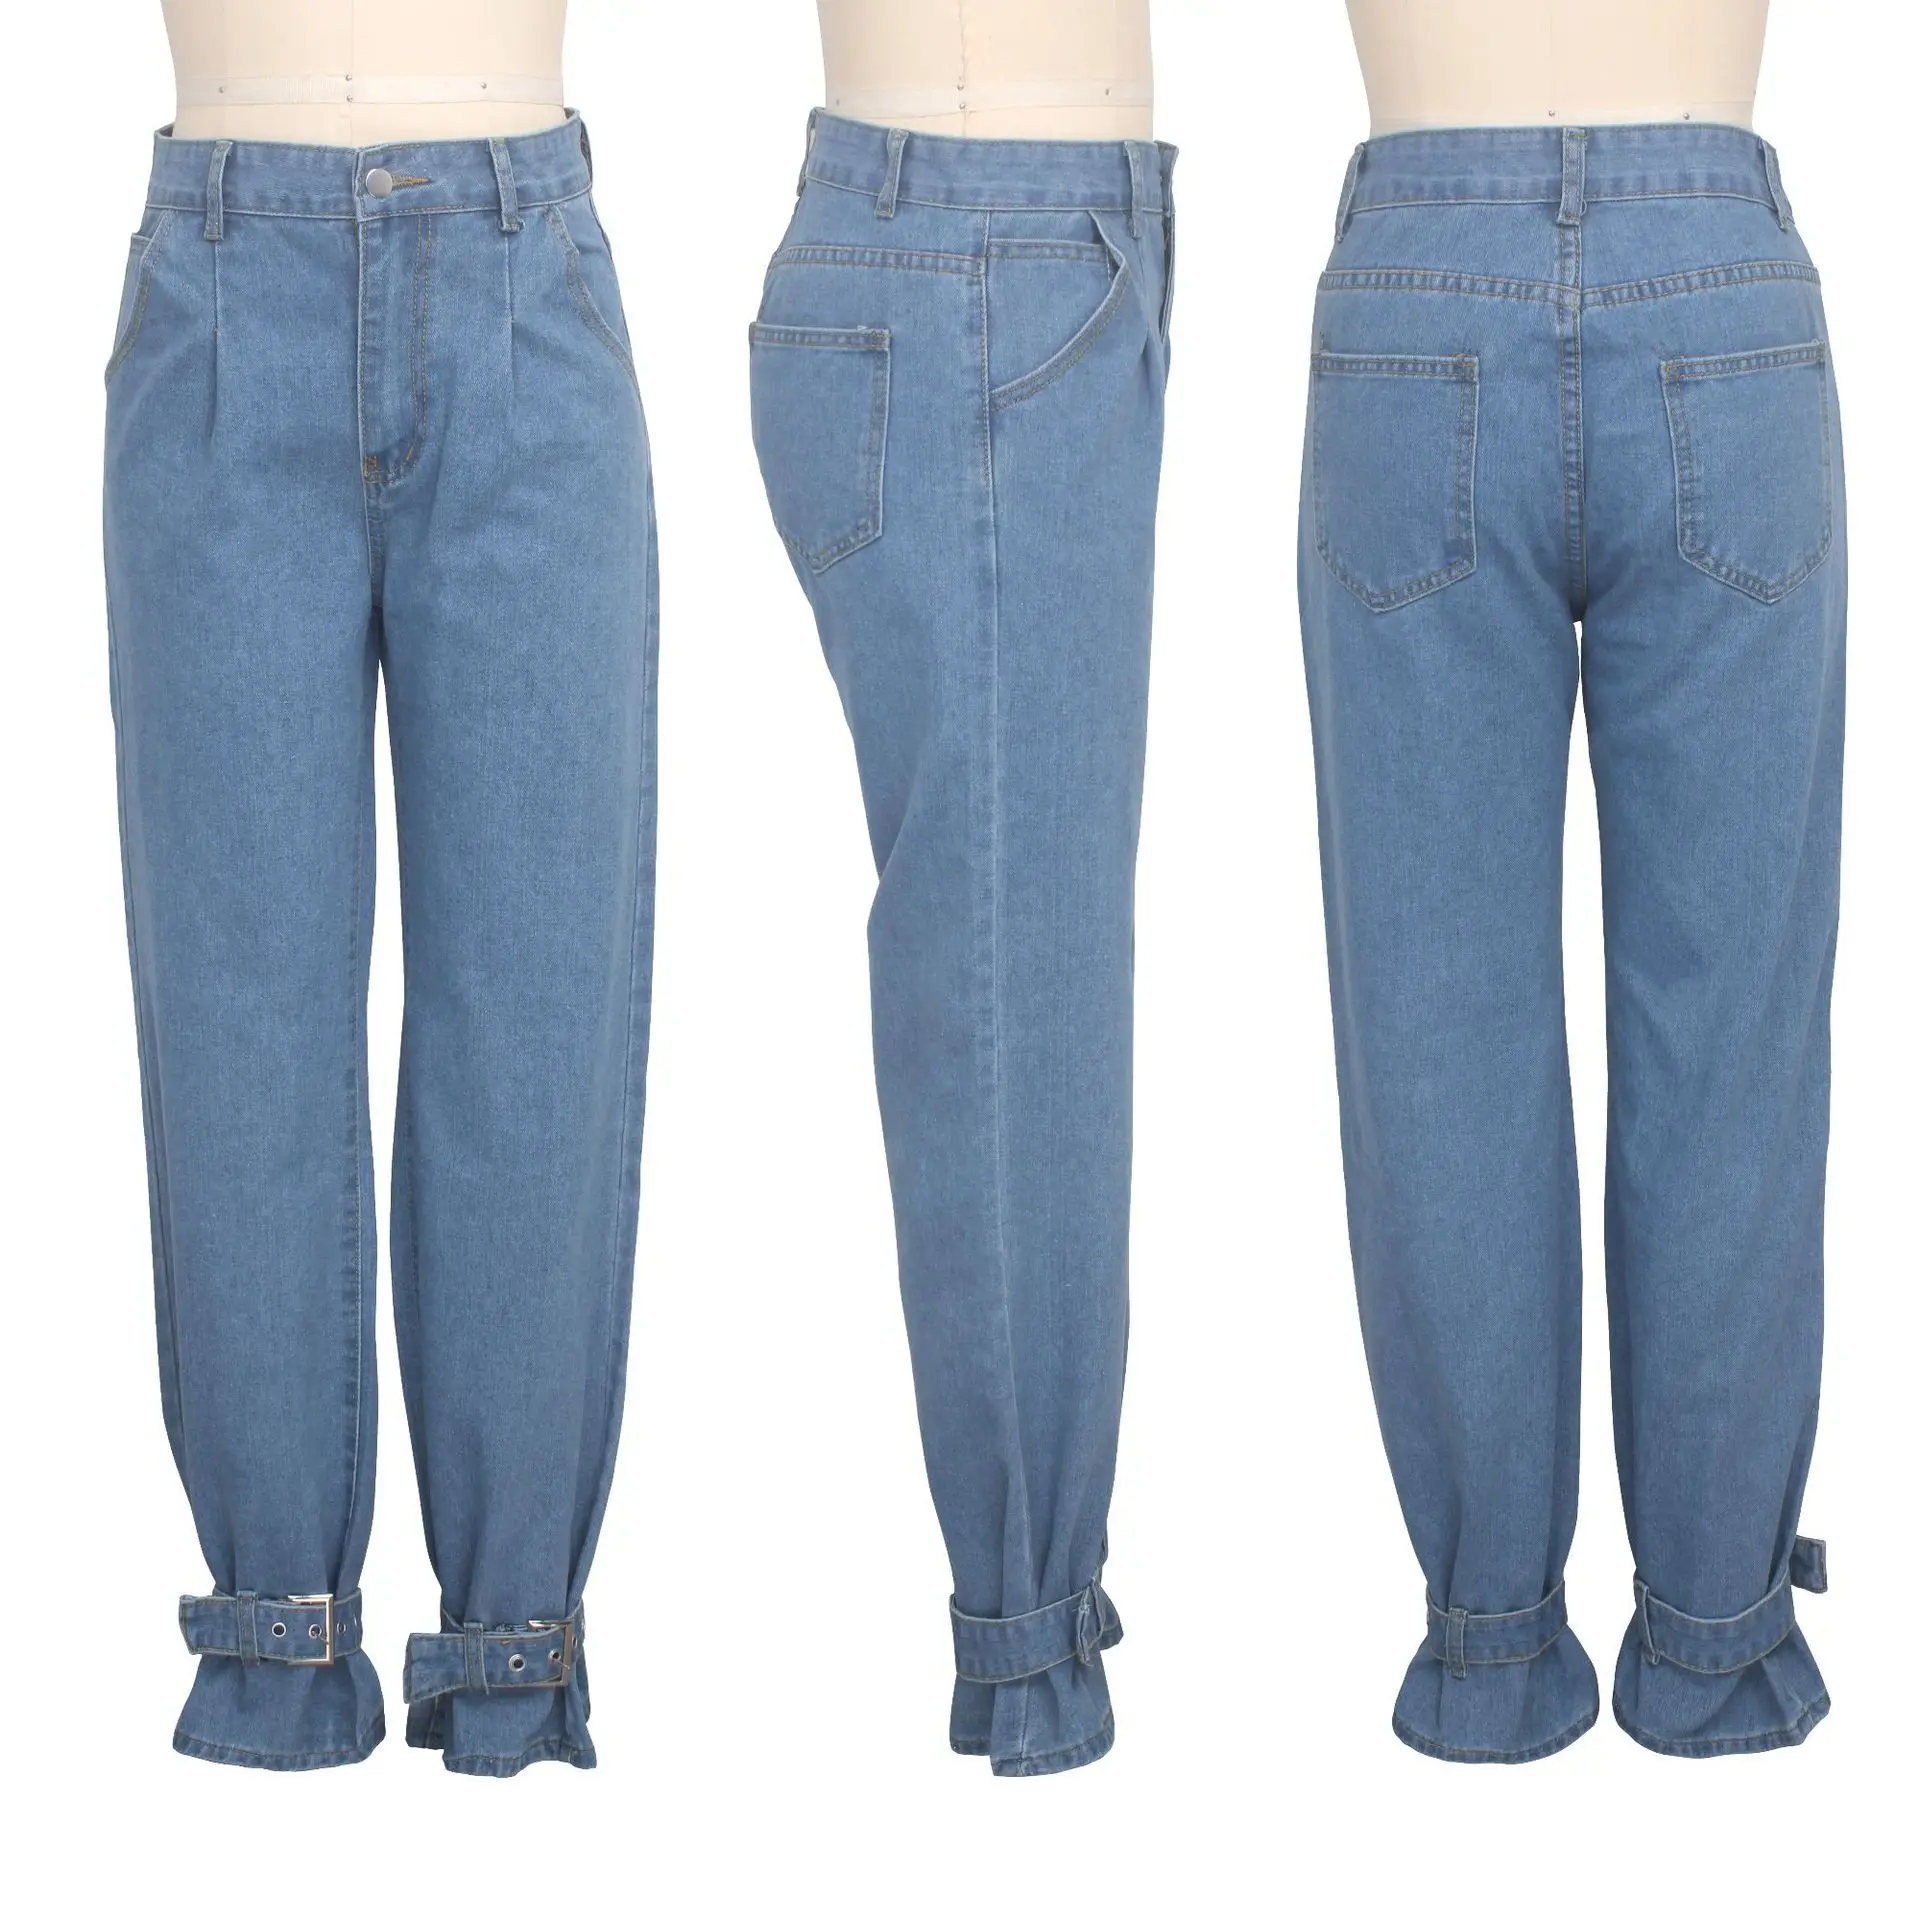 Wjustforu размера плюс, свободные, широкие в ноге, джинсы для Для женщин луча стопы Повседневное Прямые джинсы женский синий модная из джинсовой ткани, Джинсовка штанов Vestidos